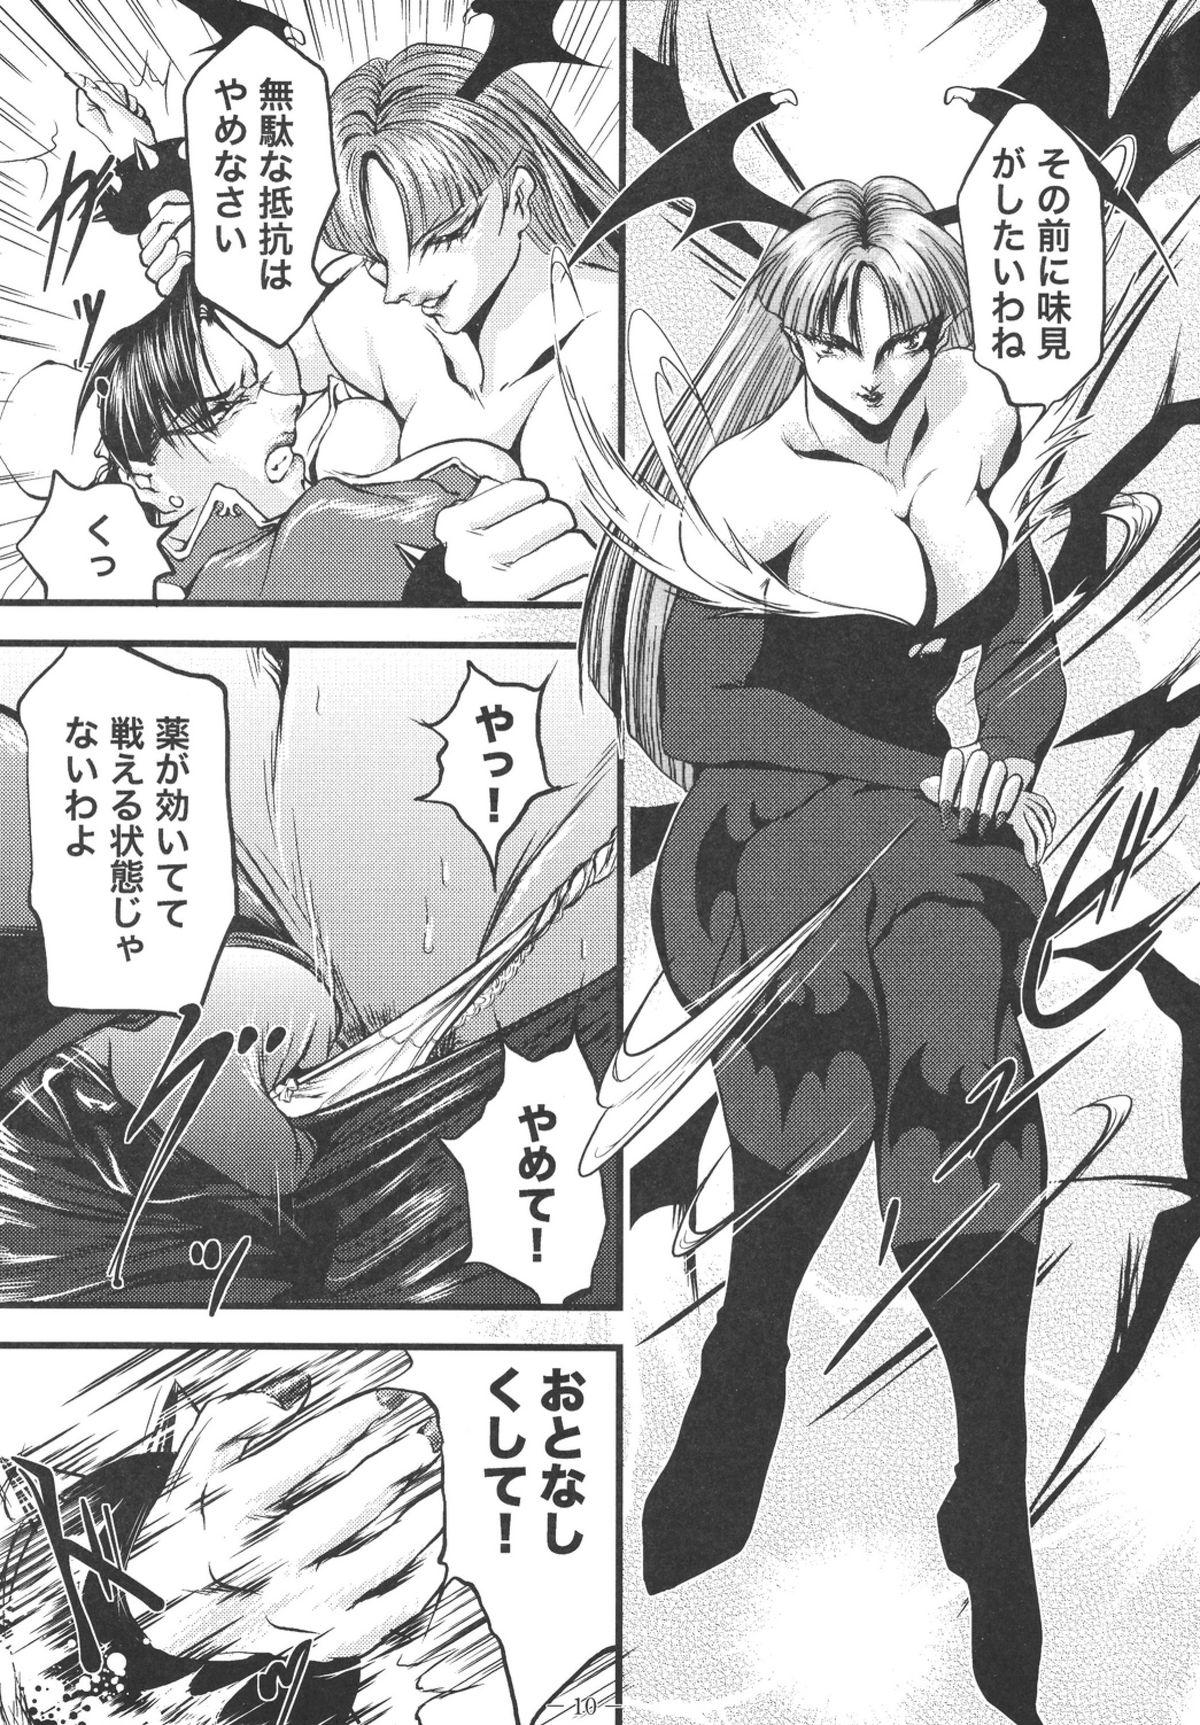 Eurobabe Ingoku no Ikusa Megami Battle Queen - Street fighter Darkstalkers Amature Sex - Page 10